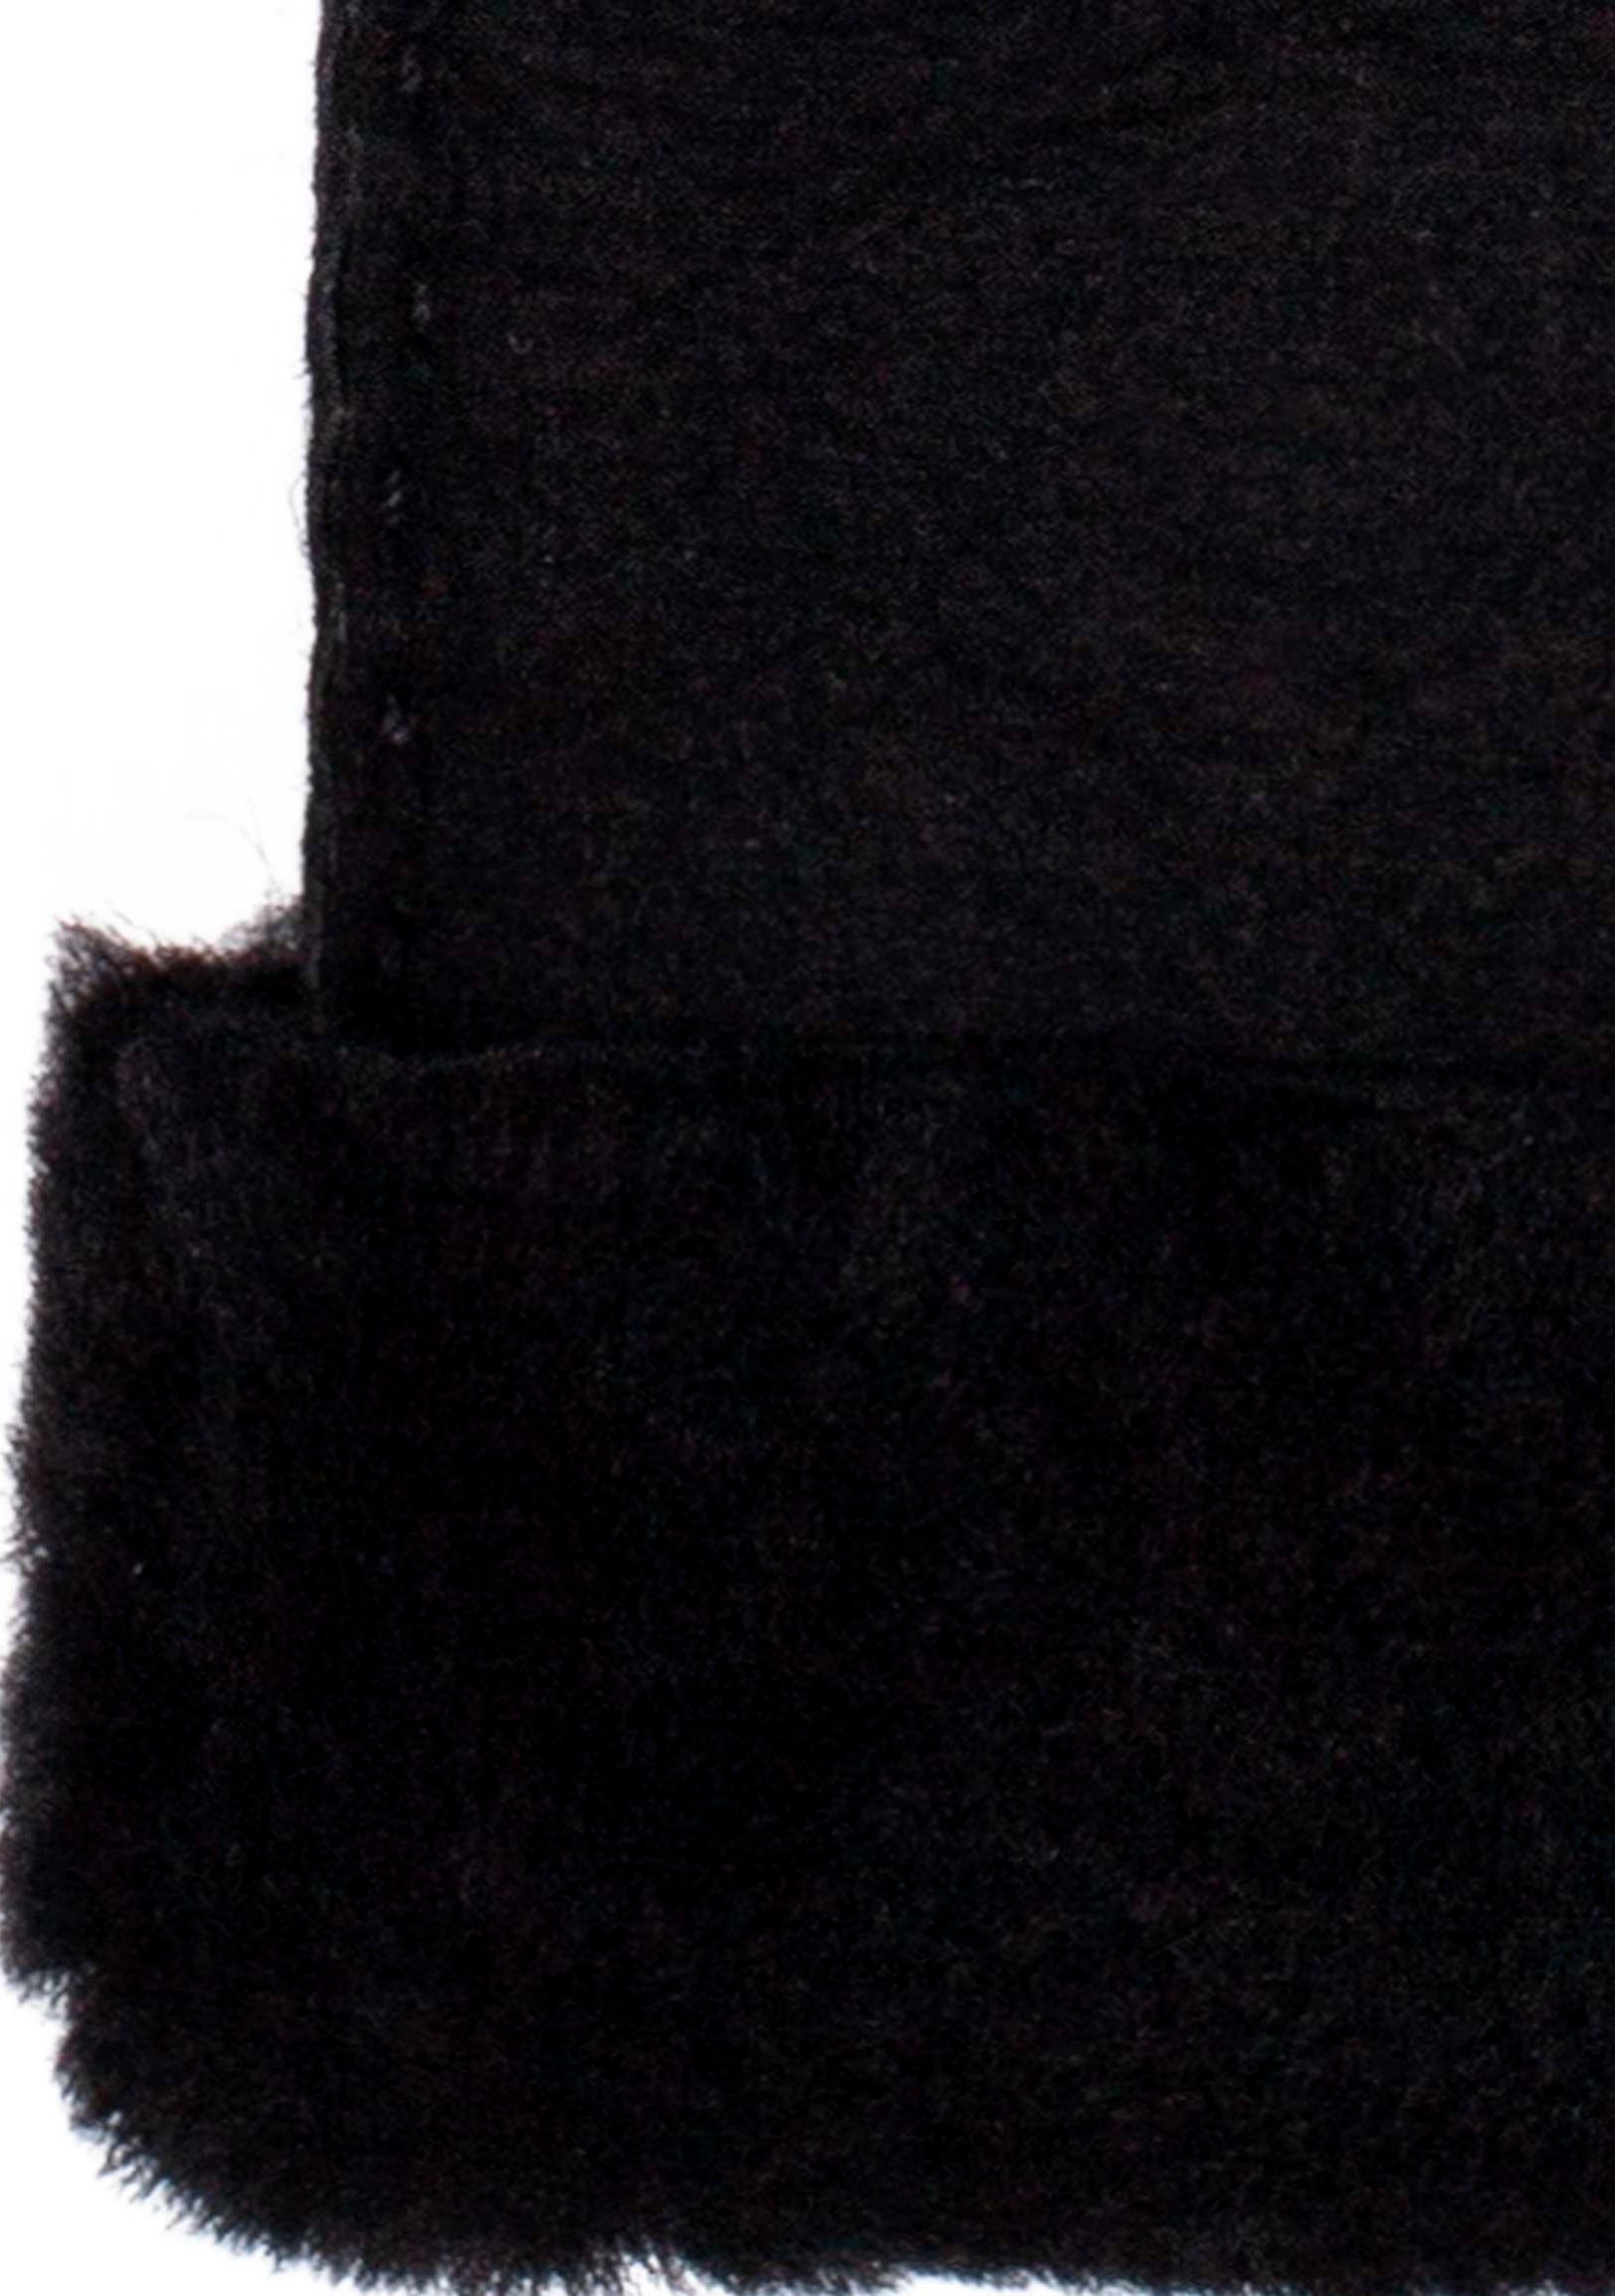 KESSLER Lederhandschuhe, klassiches Design mit 3 Aufnähten und breitem Umschlag